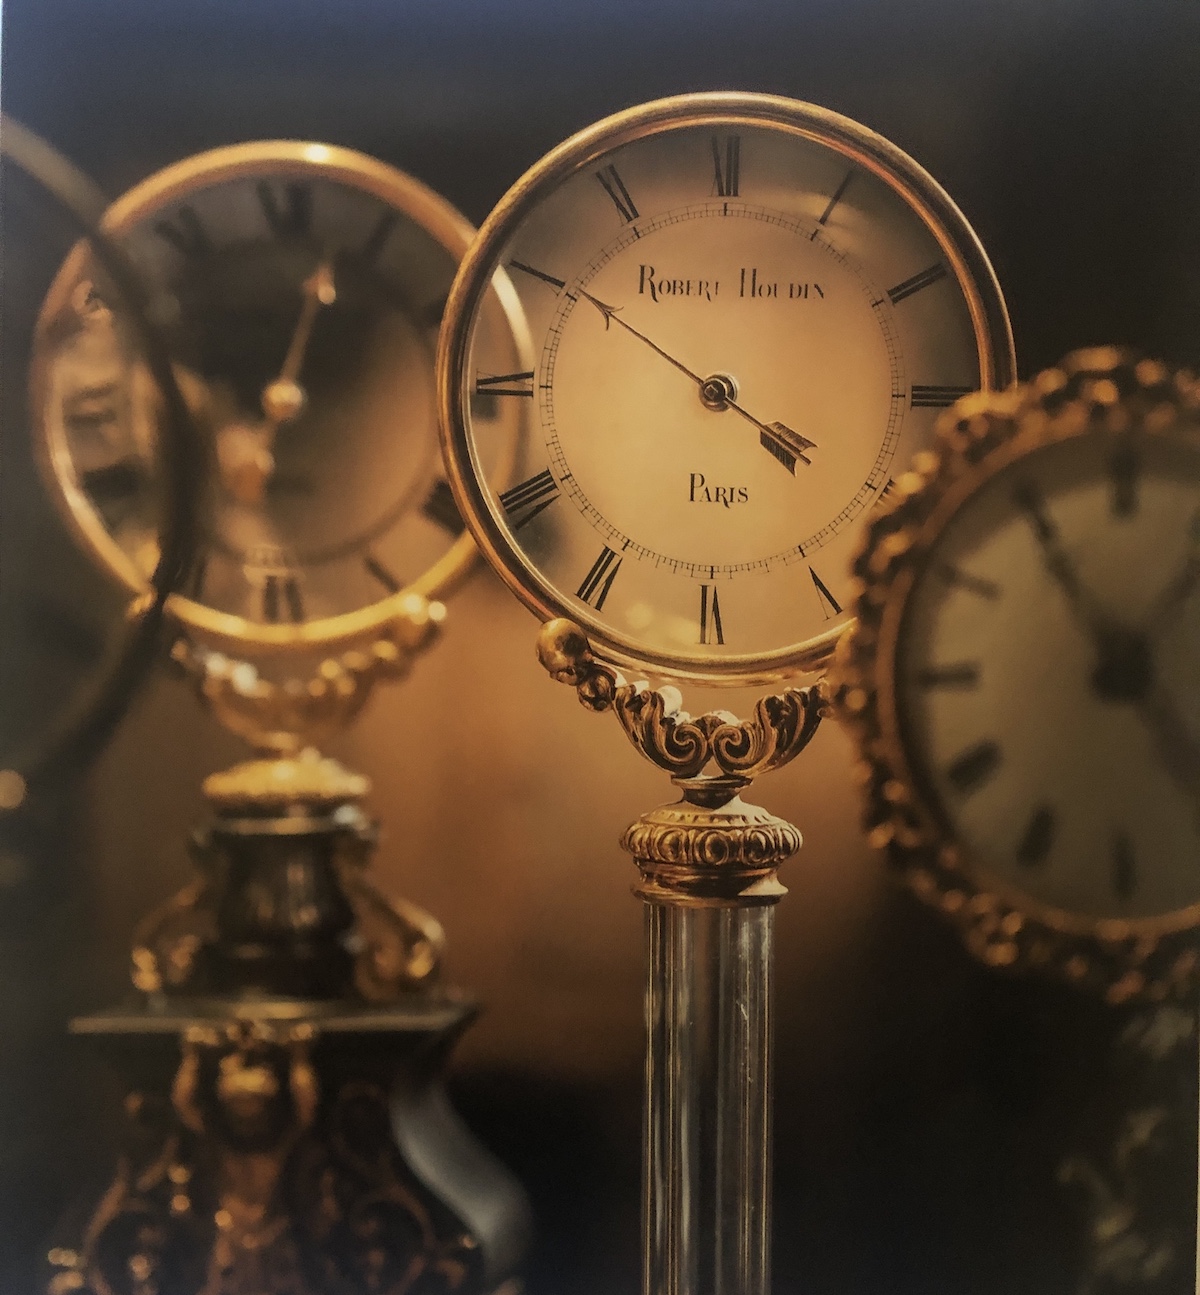 Horloge de Robert Houdin Paris